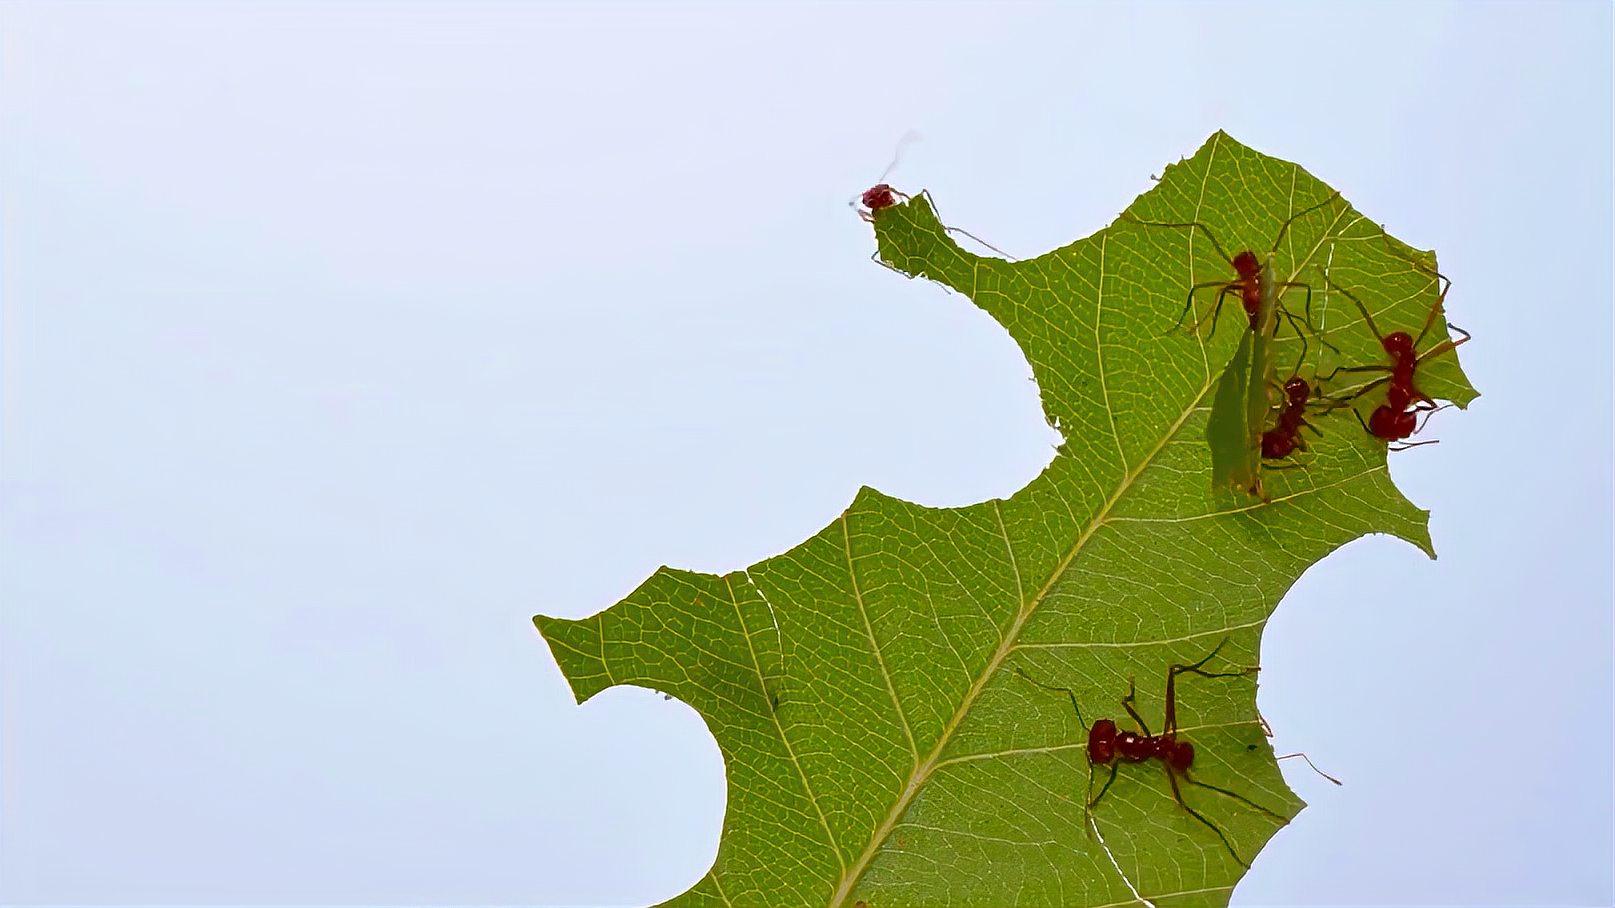 神奇的切叶蚁,唯一会种植真菌的蚂蚁,竟会利用树叶种蘑菇